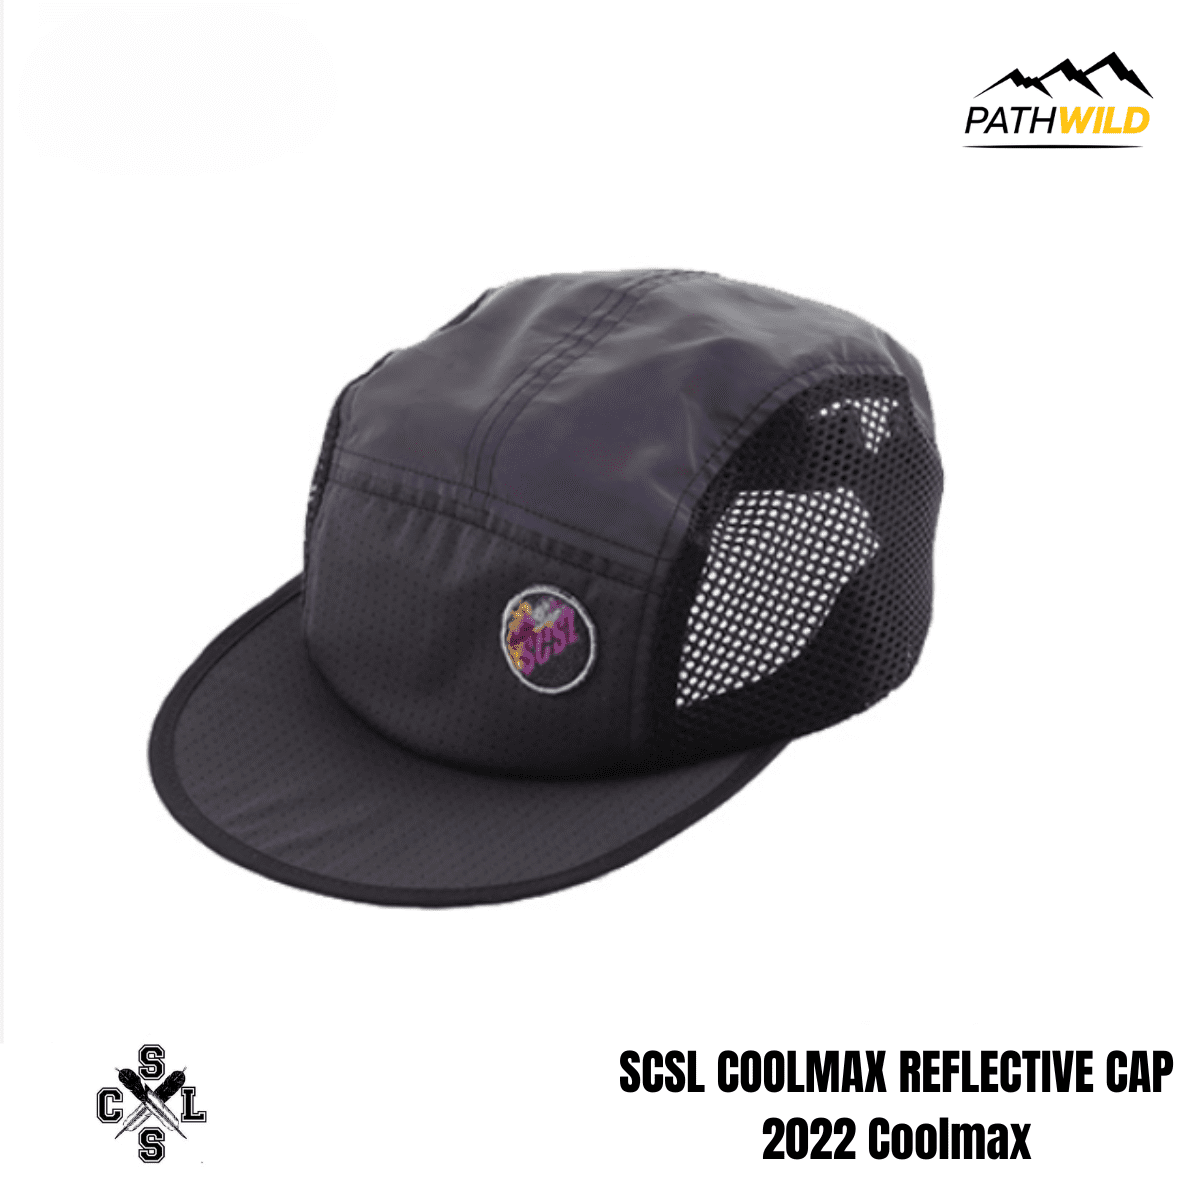 หมวกแก๊ปสะท้อนแสง หมวกแก๊ปกันแดด SCSL COOLMAX REFLECTIVE CAP 2022 Coolmax หมวกCAPกันแดด หมวกแก๊ป หมวกออกกำลังกาย หมวกวิ่ง